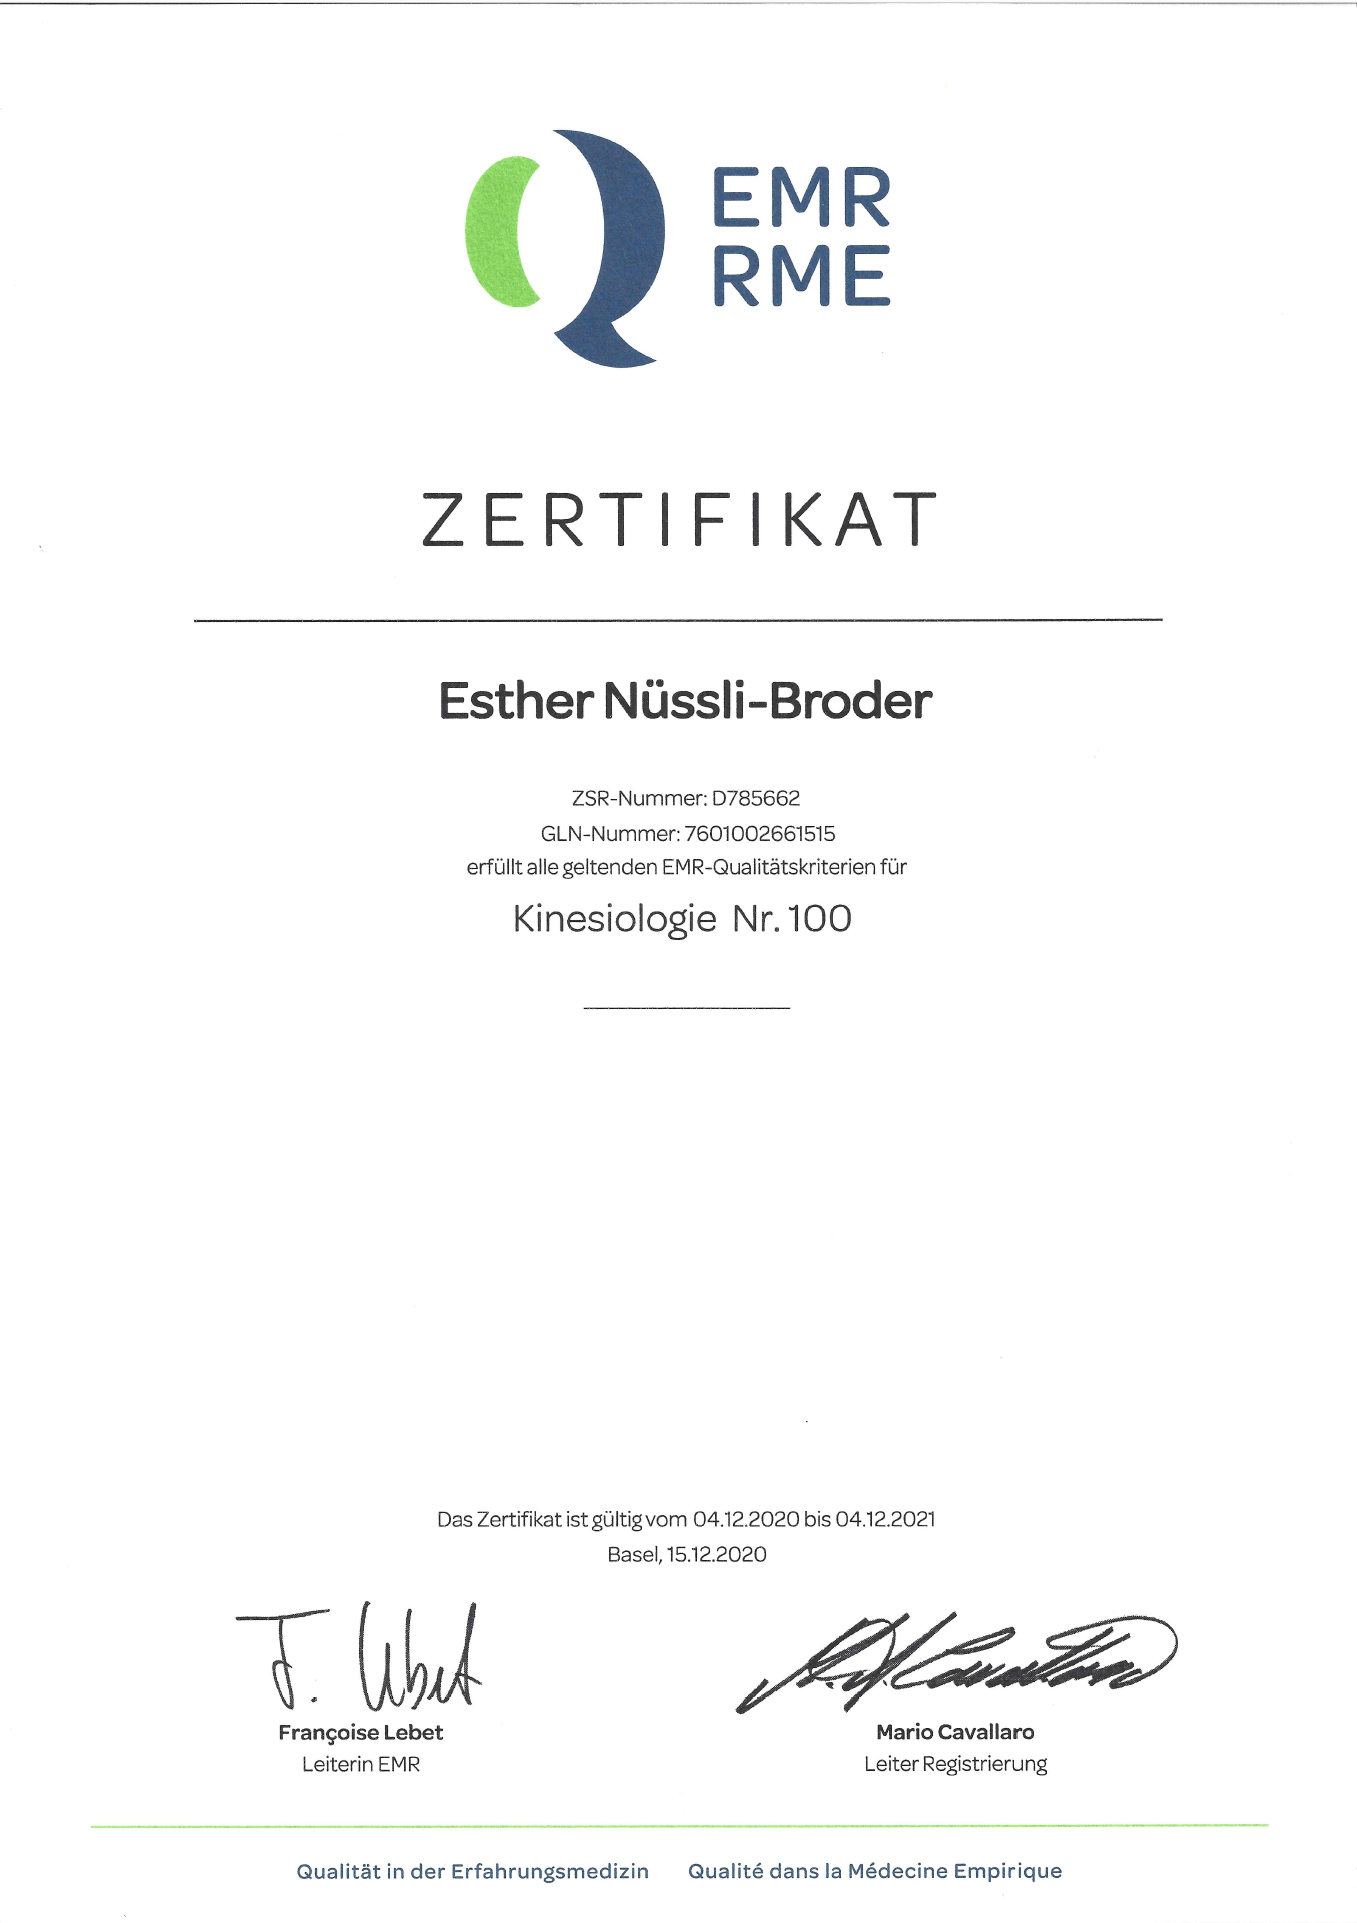 EMR Zertifikat 2021